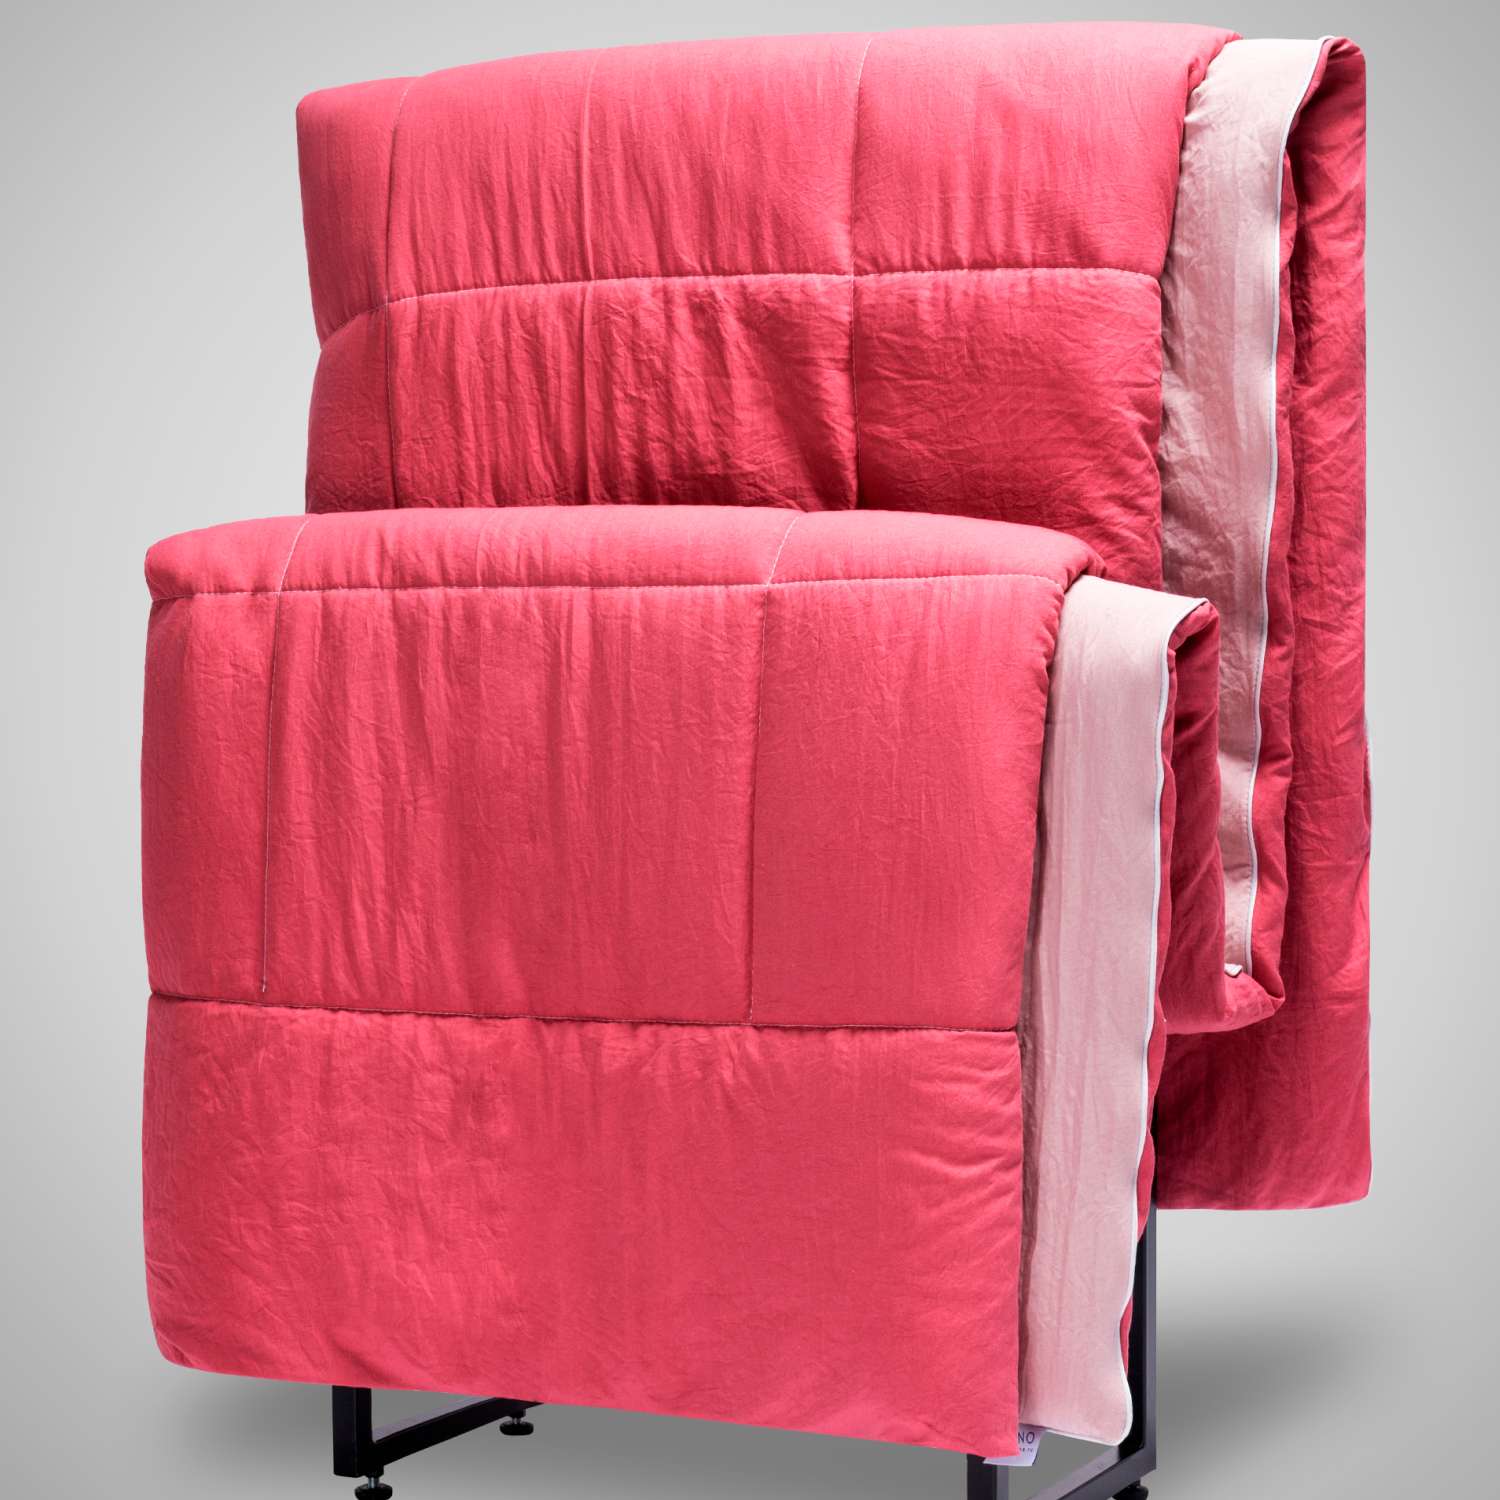 Одеяло SONNO TWIN 2-спальное 170х205 см цвет Розовый малиновый - фото 2